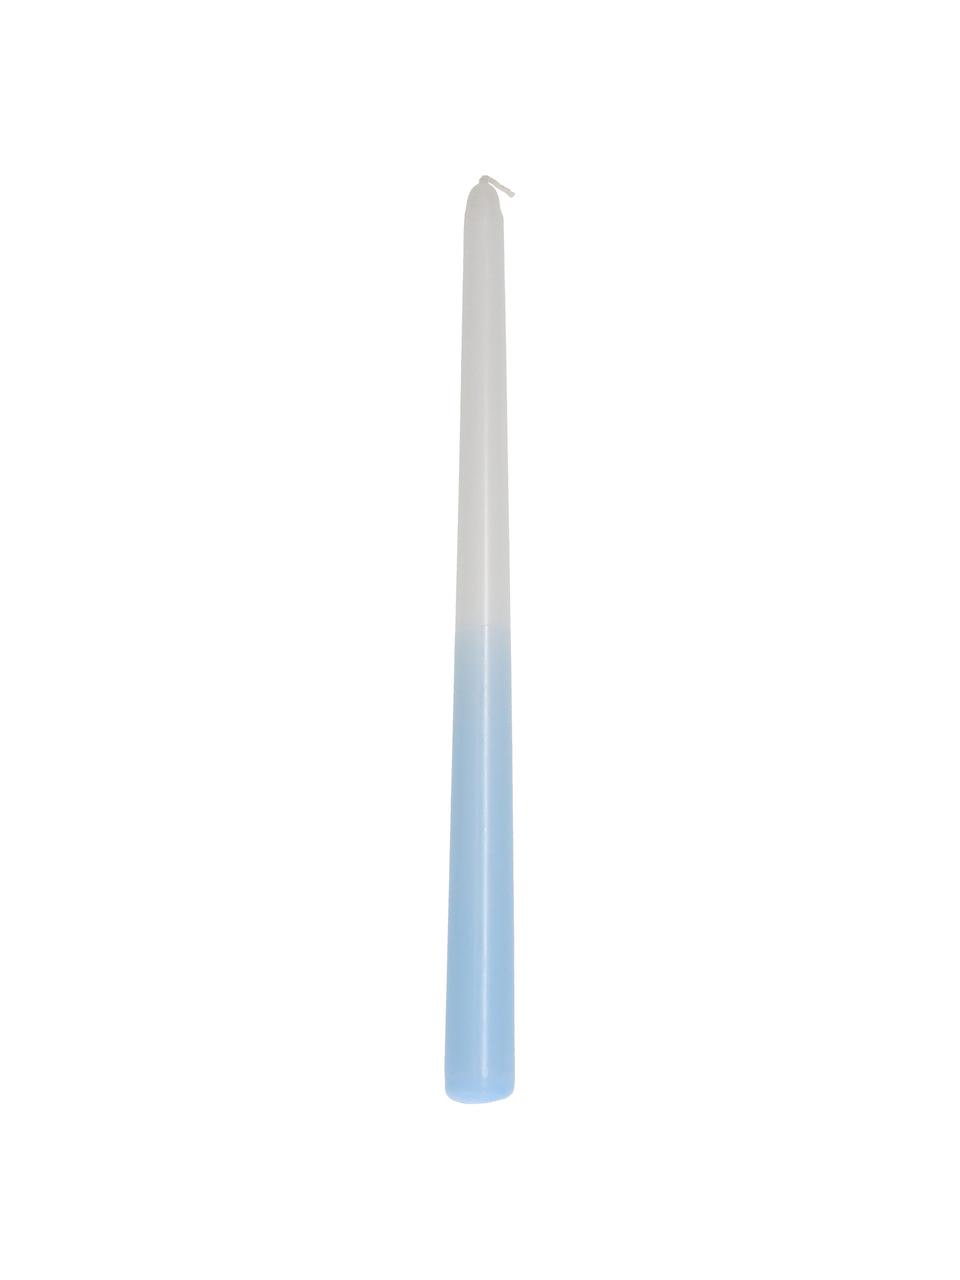 Chandelle bleu clair/blanc Dubli, 4 pièces, Cire, Bleu, blanc, Ø 2 x haut. 31 cm